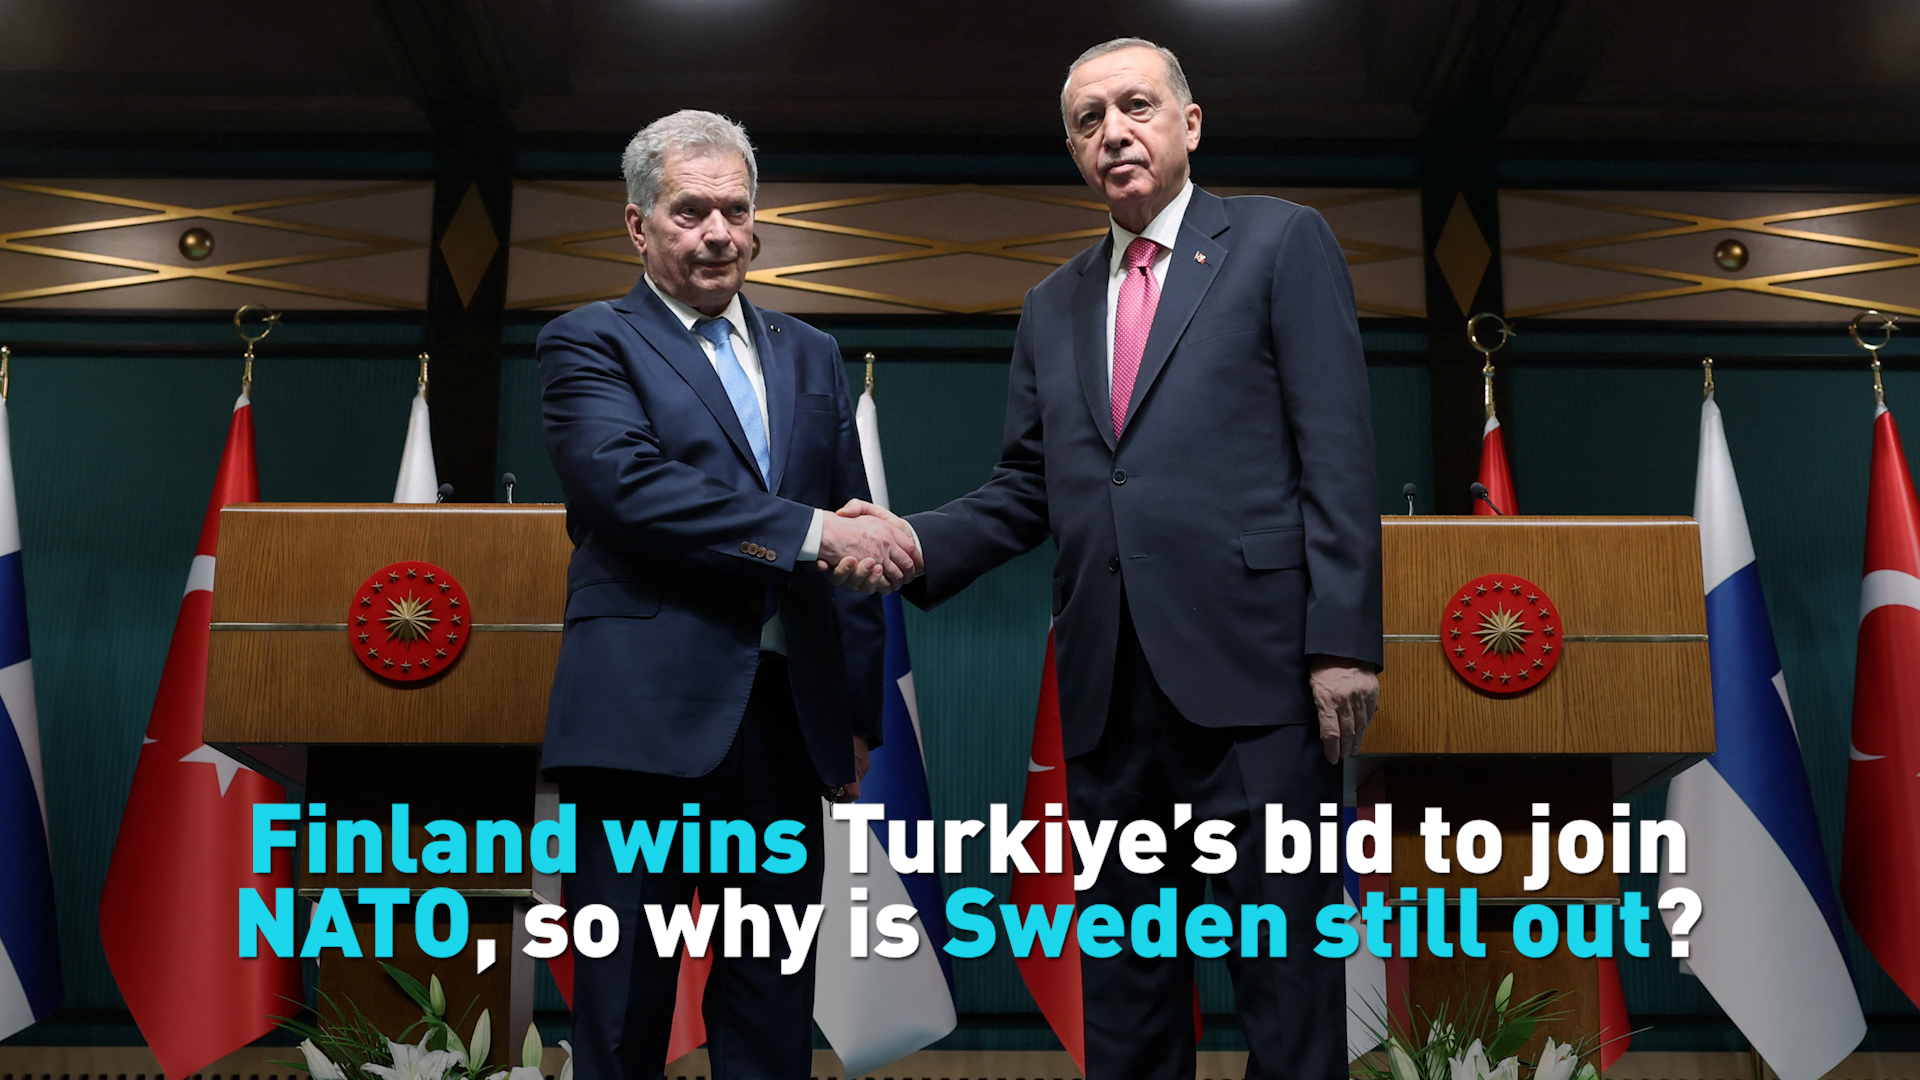 Why did Finland wins Turkiye's NATO bid but Sweden is still out?